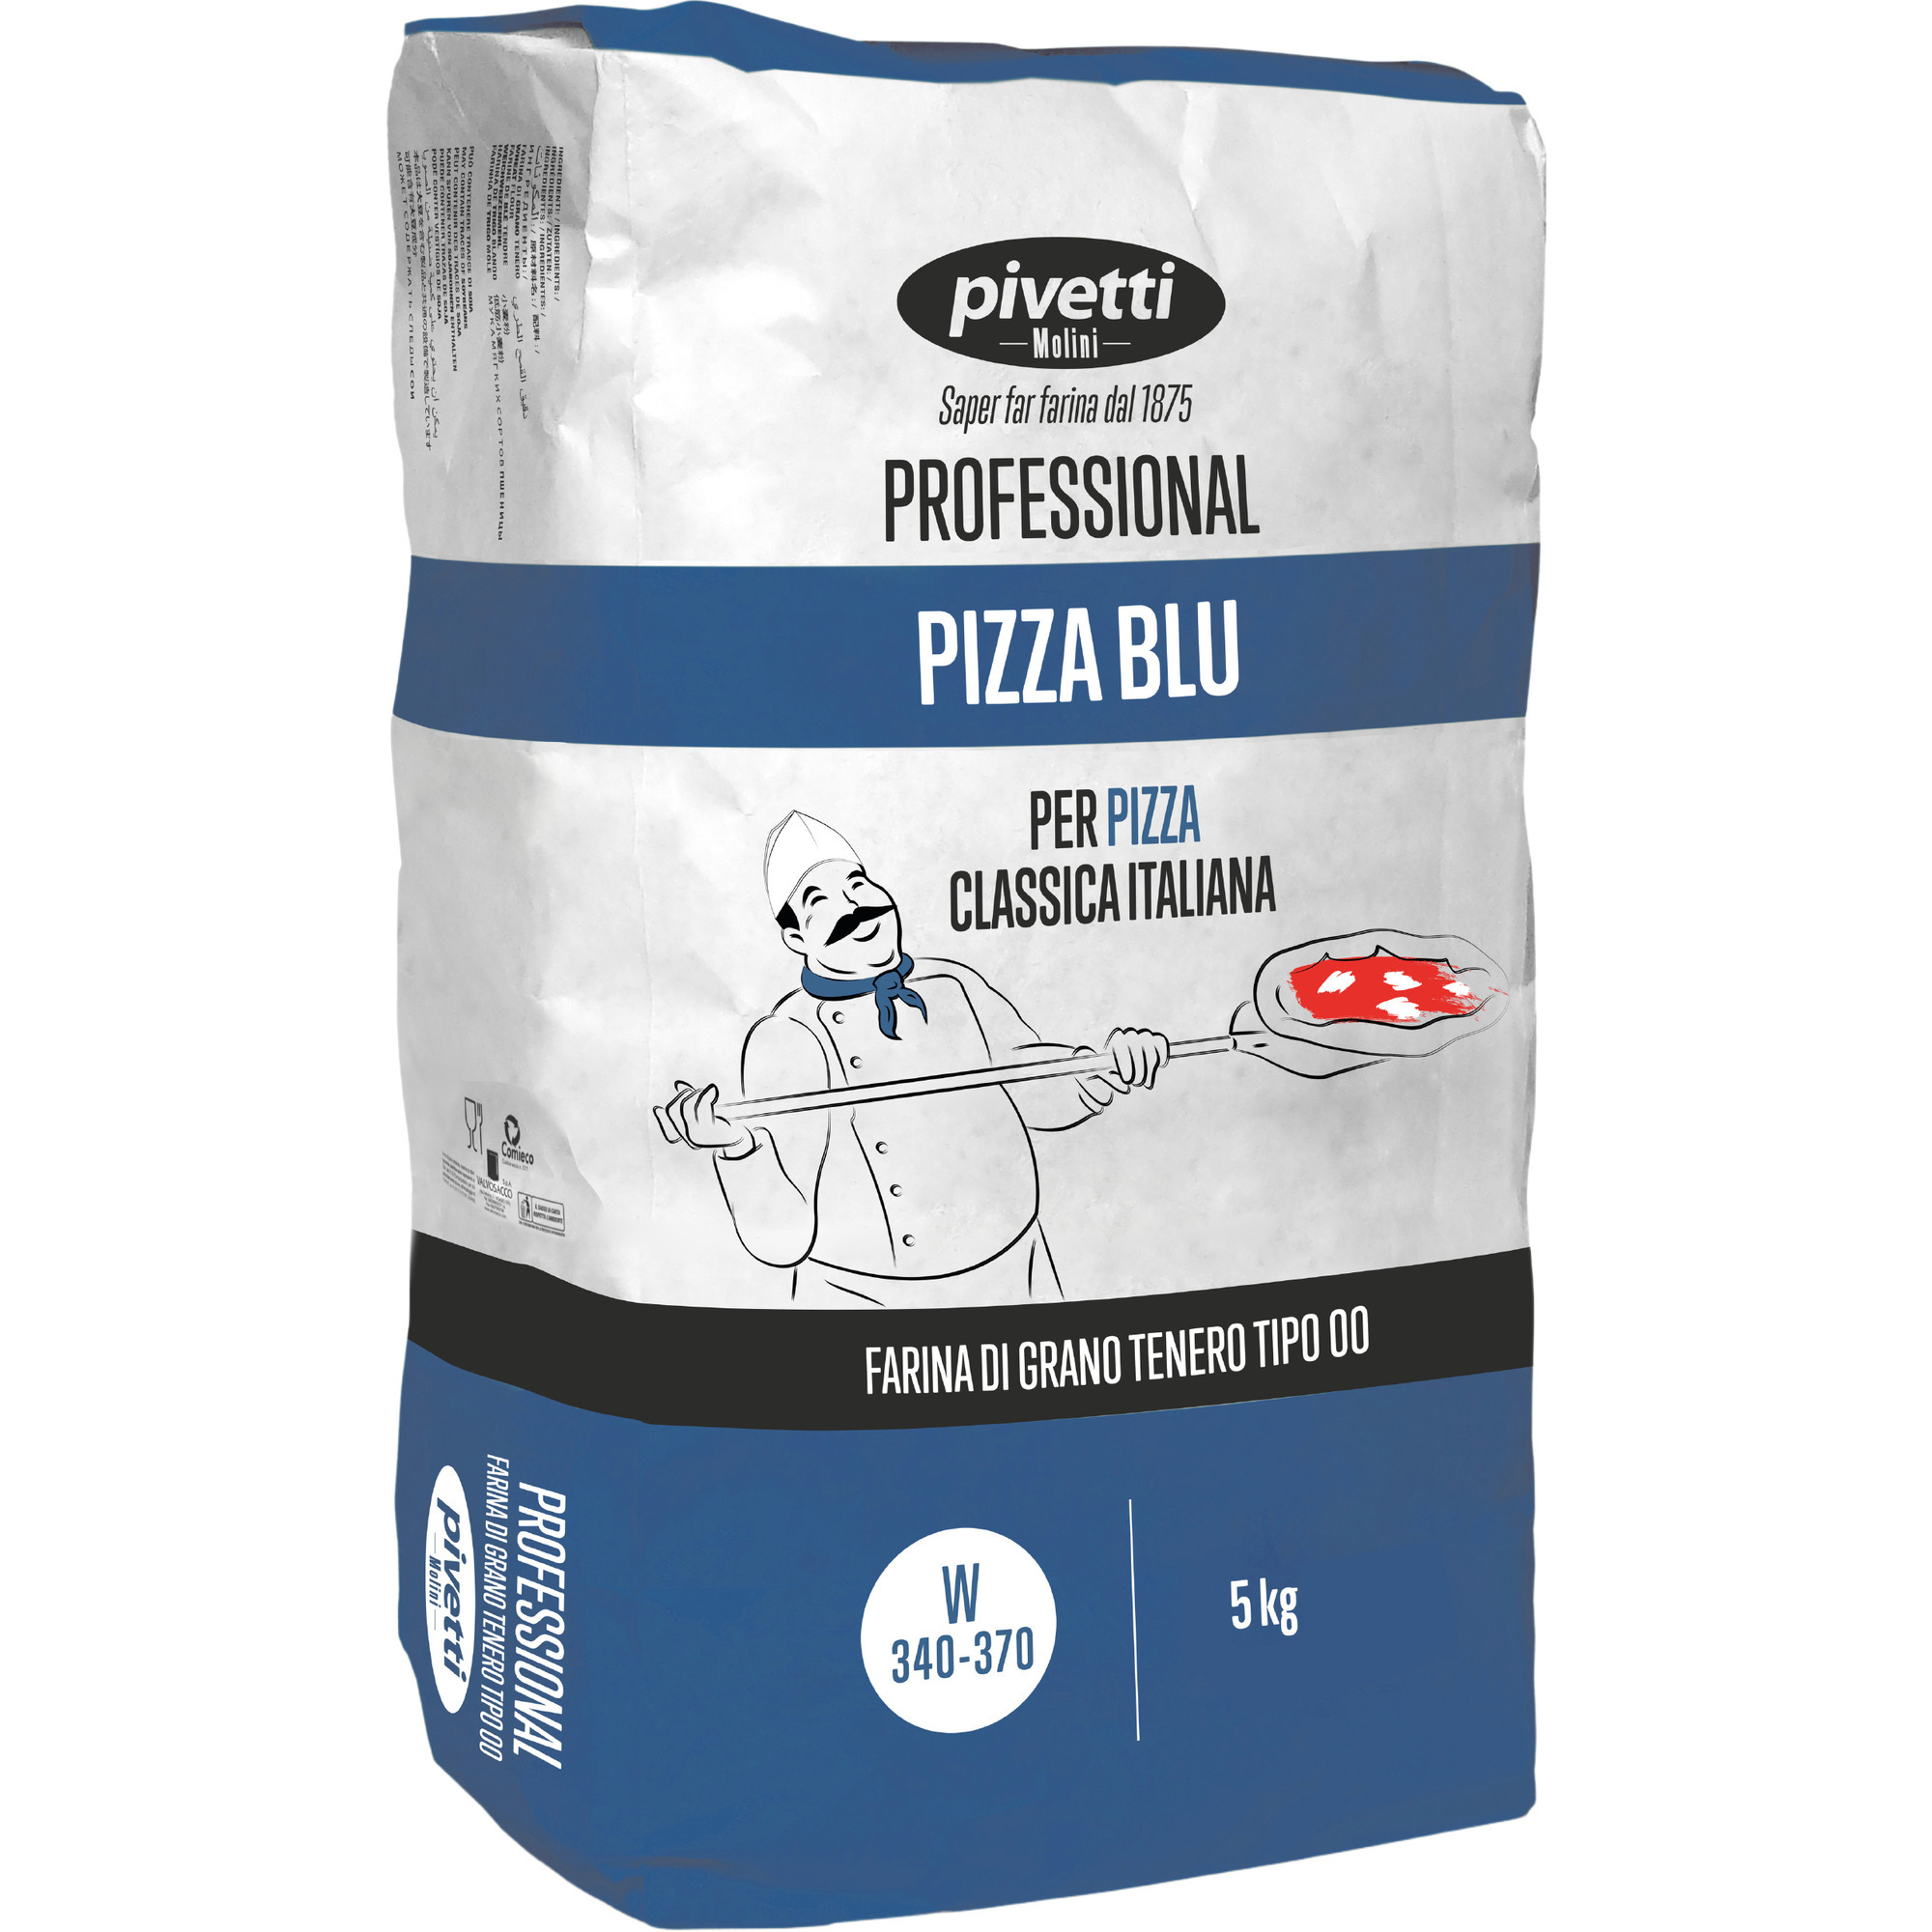 Pivetti Professional Pizzamehl Blu 5 kg